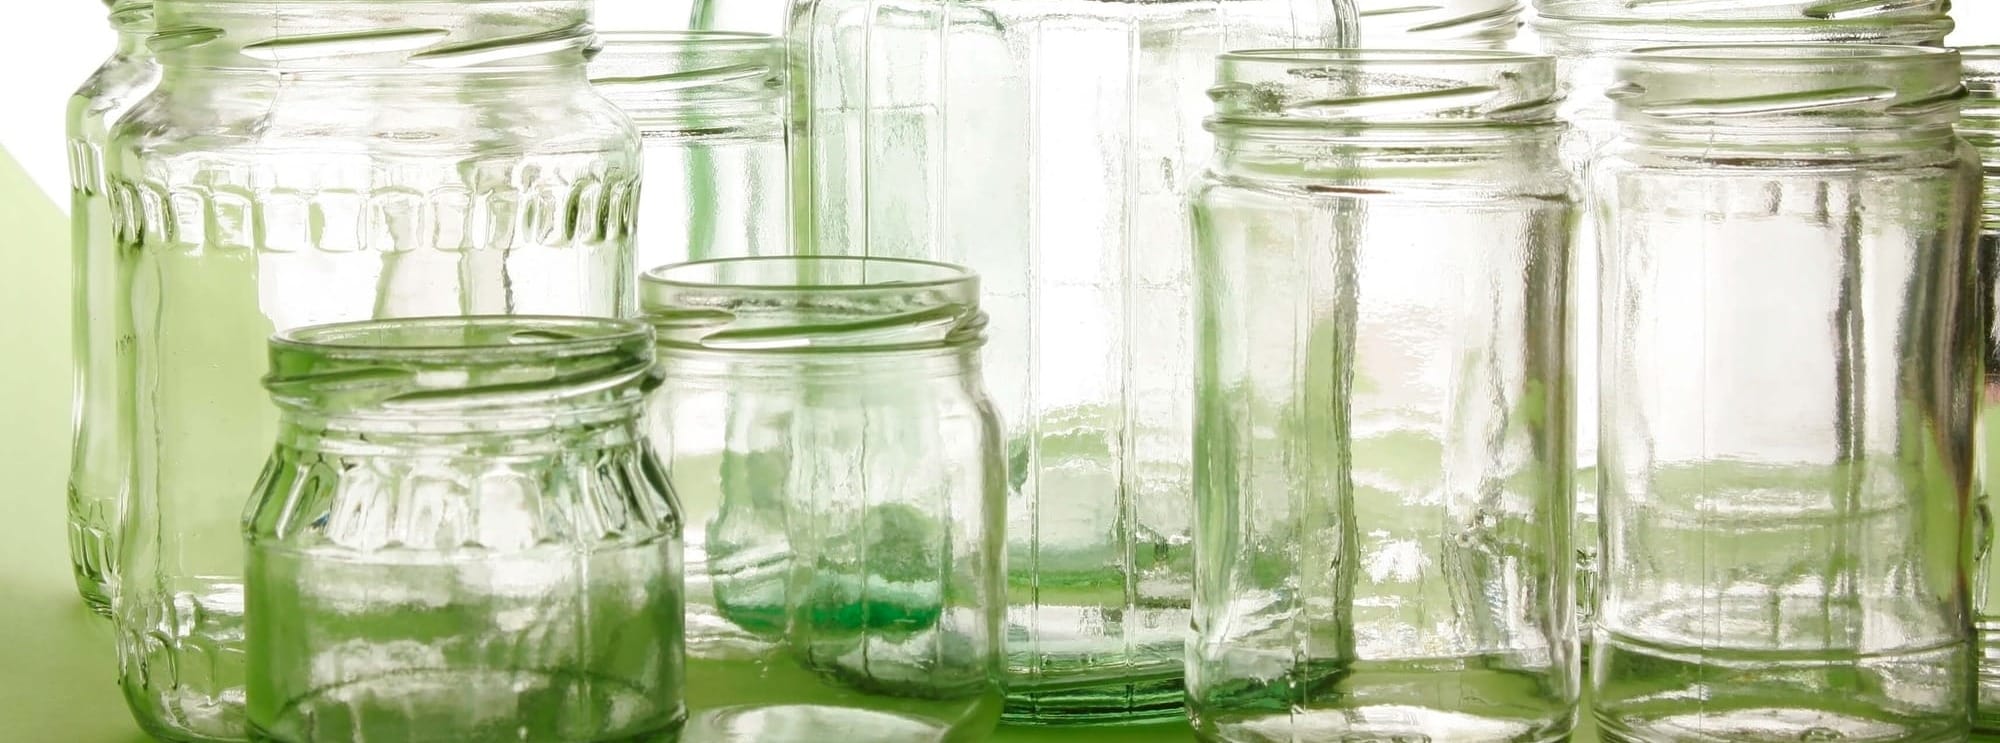 glass jars by achiartistul